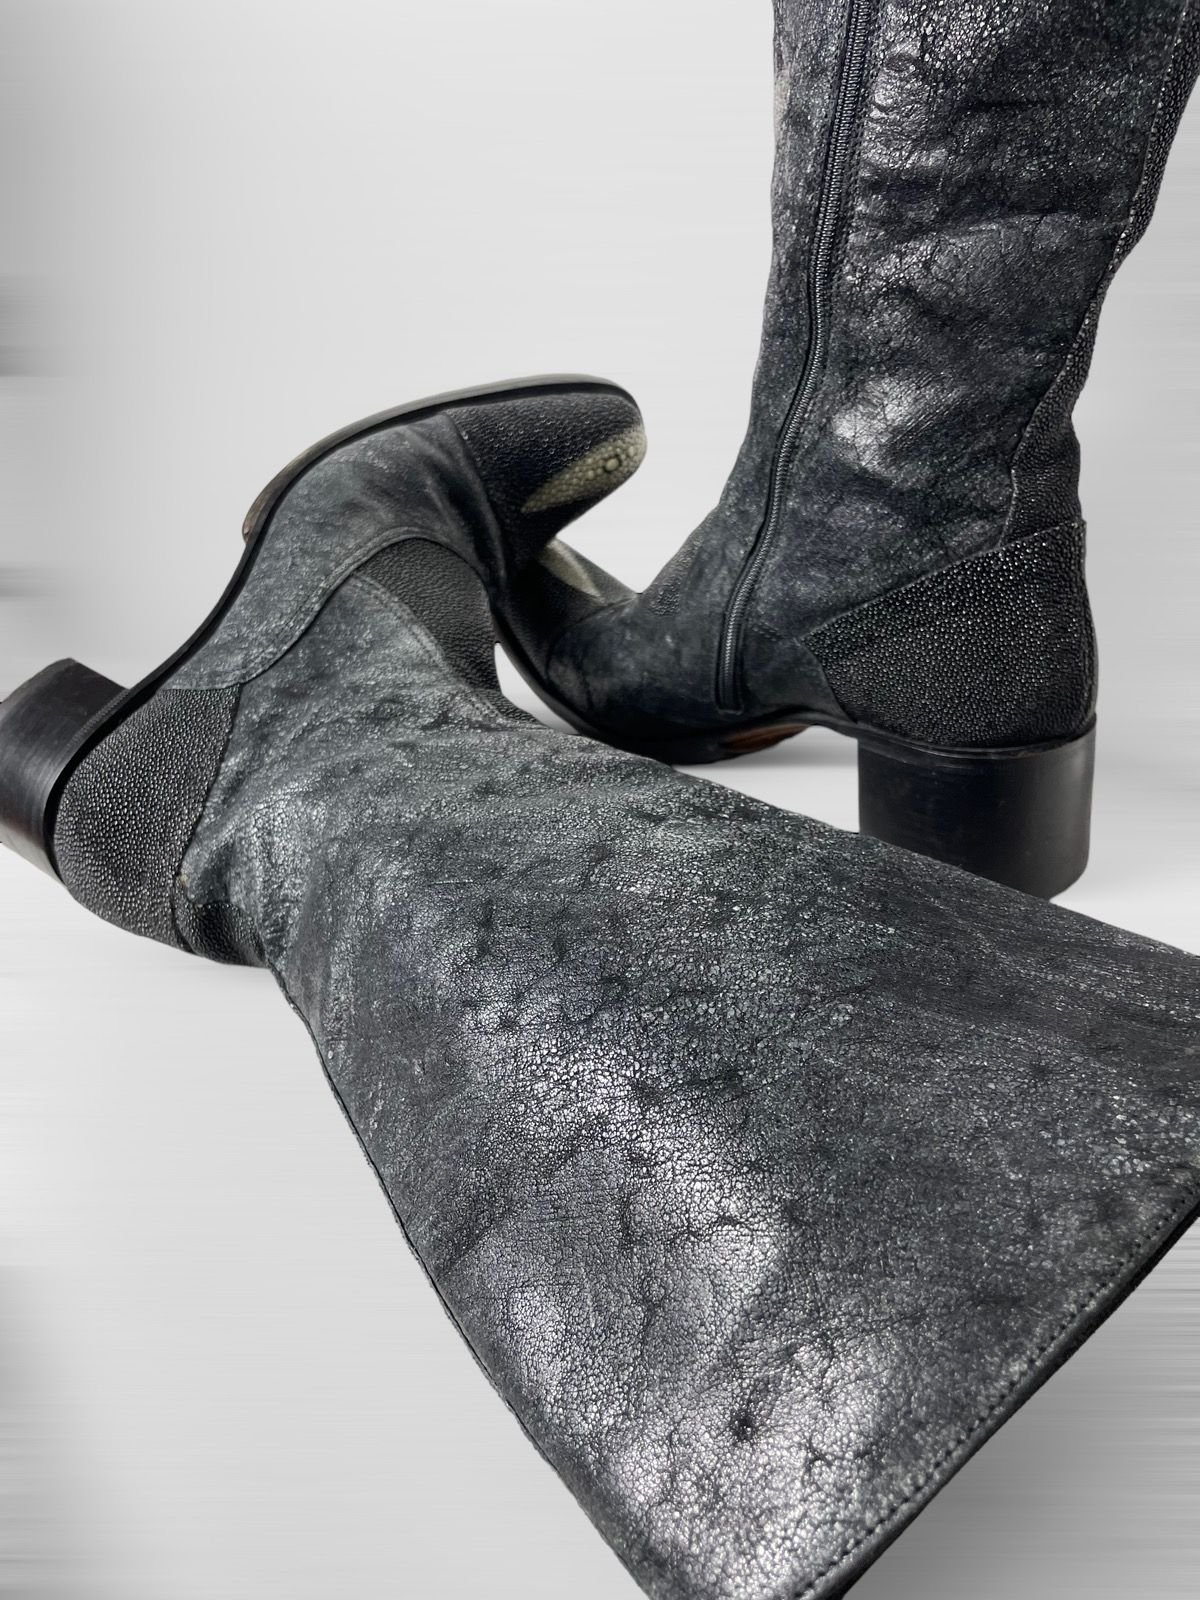 Gianni Barbato Vintage Gianni Barbato cowboy western Boots genuine leather Size US 6 / IT 36 - 3 Thumbnail